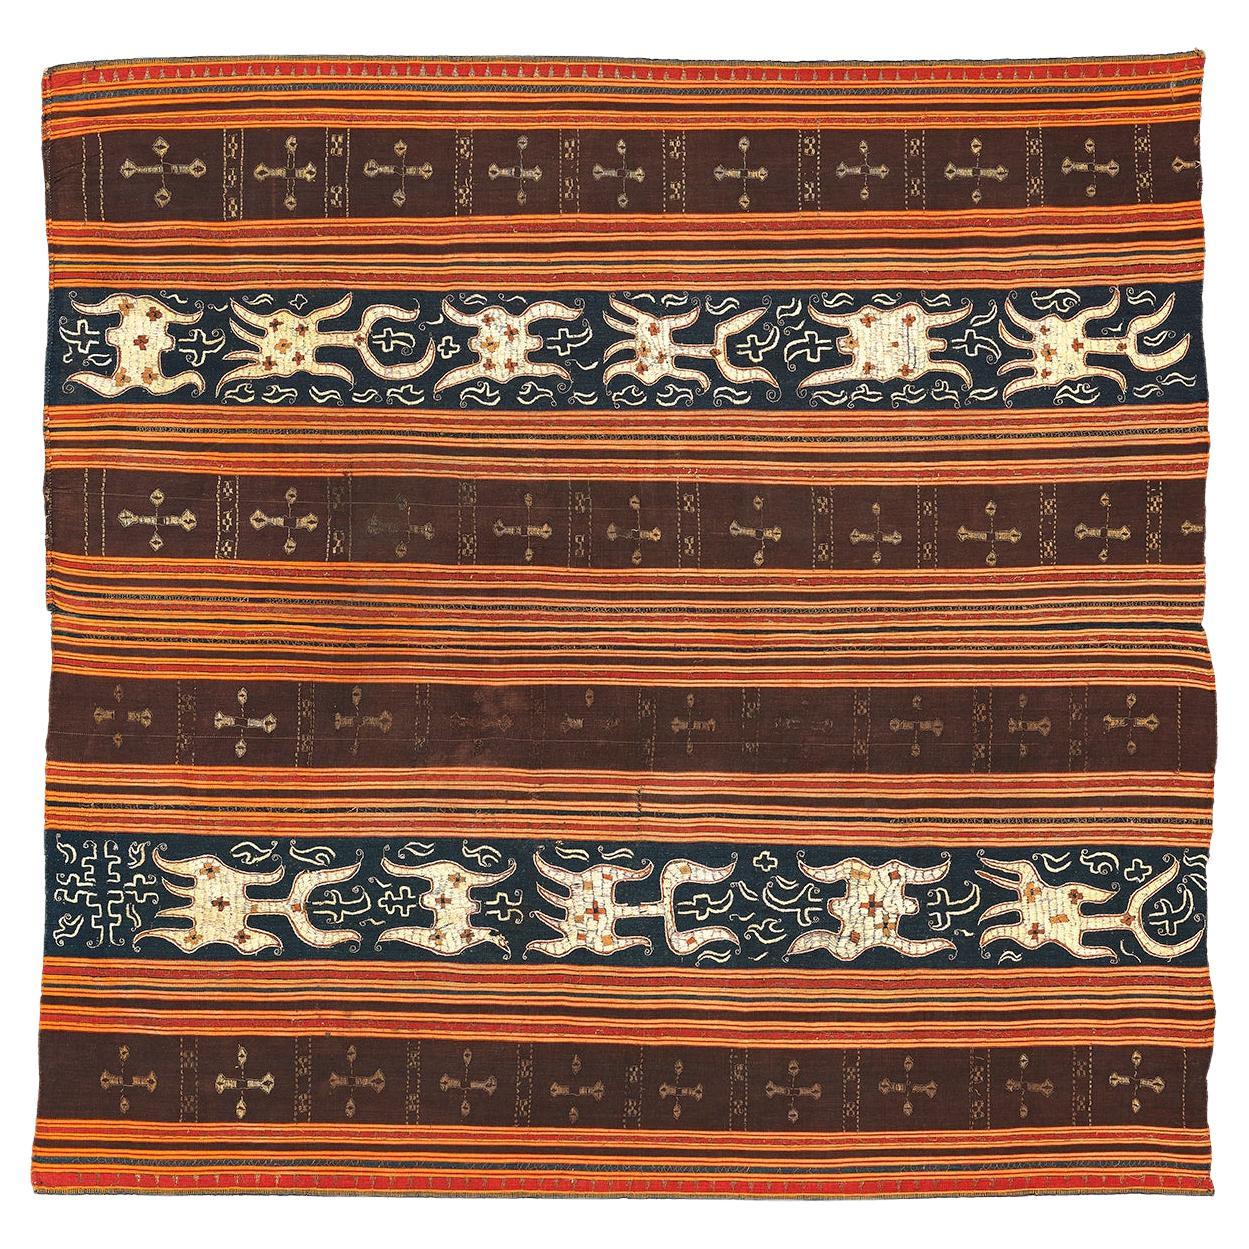 Antique Indonesian Ceremonial Textile, Lampung People, Sumatra